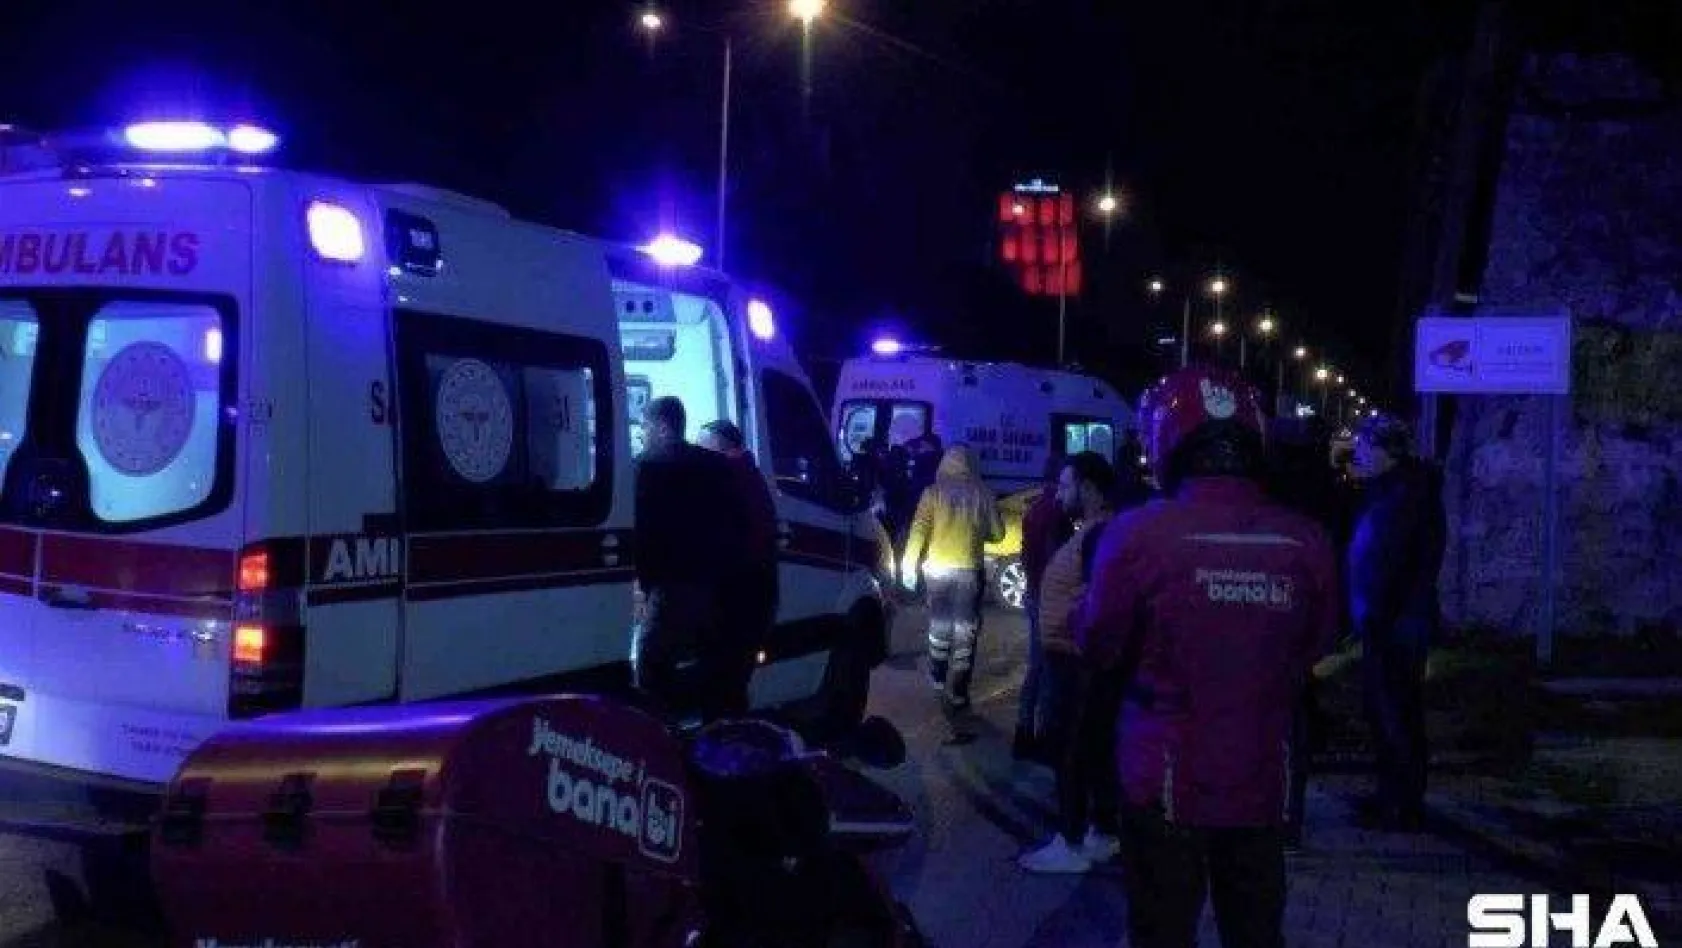 Maltepe'de makas atarak ilerleyen otomobil zincirleme kazaya neden oldu: 3 yaralı